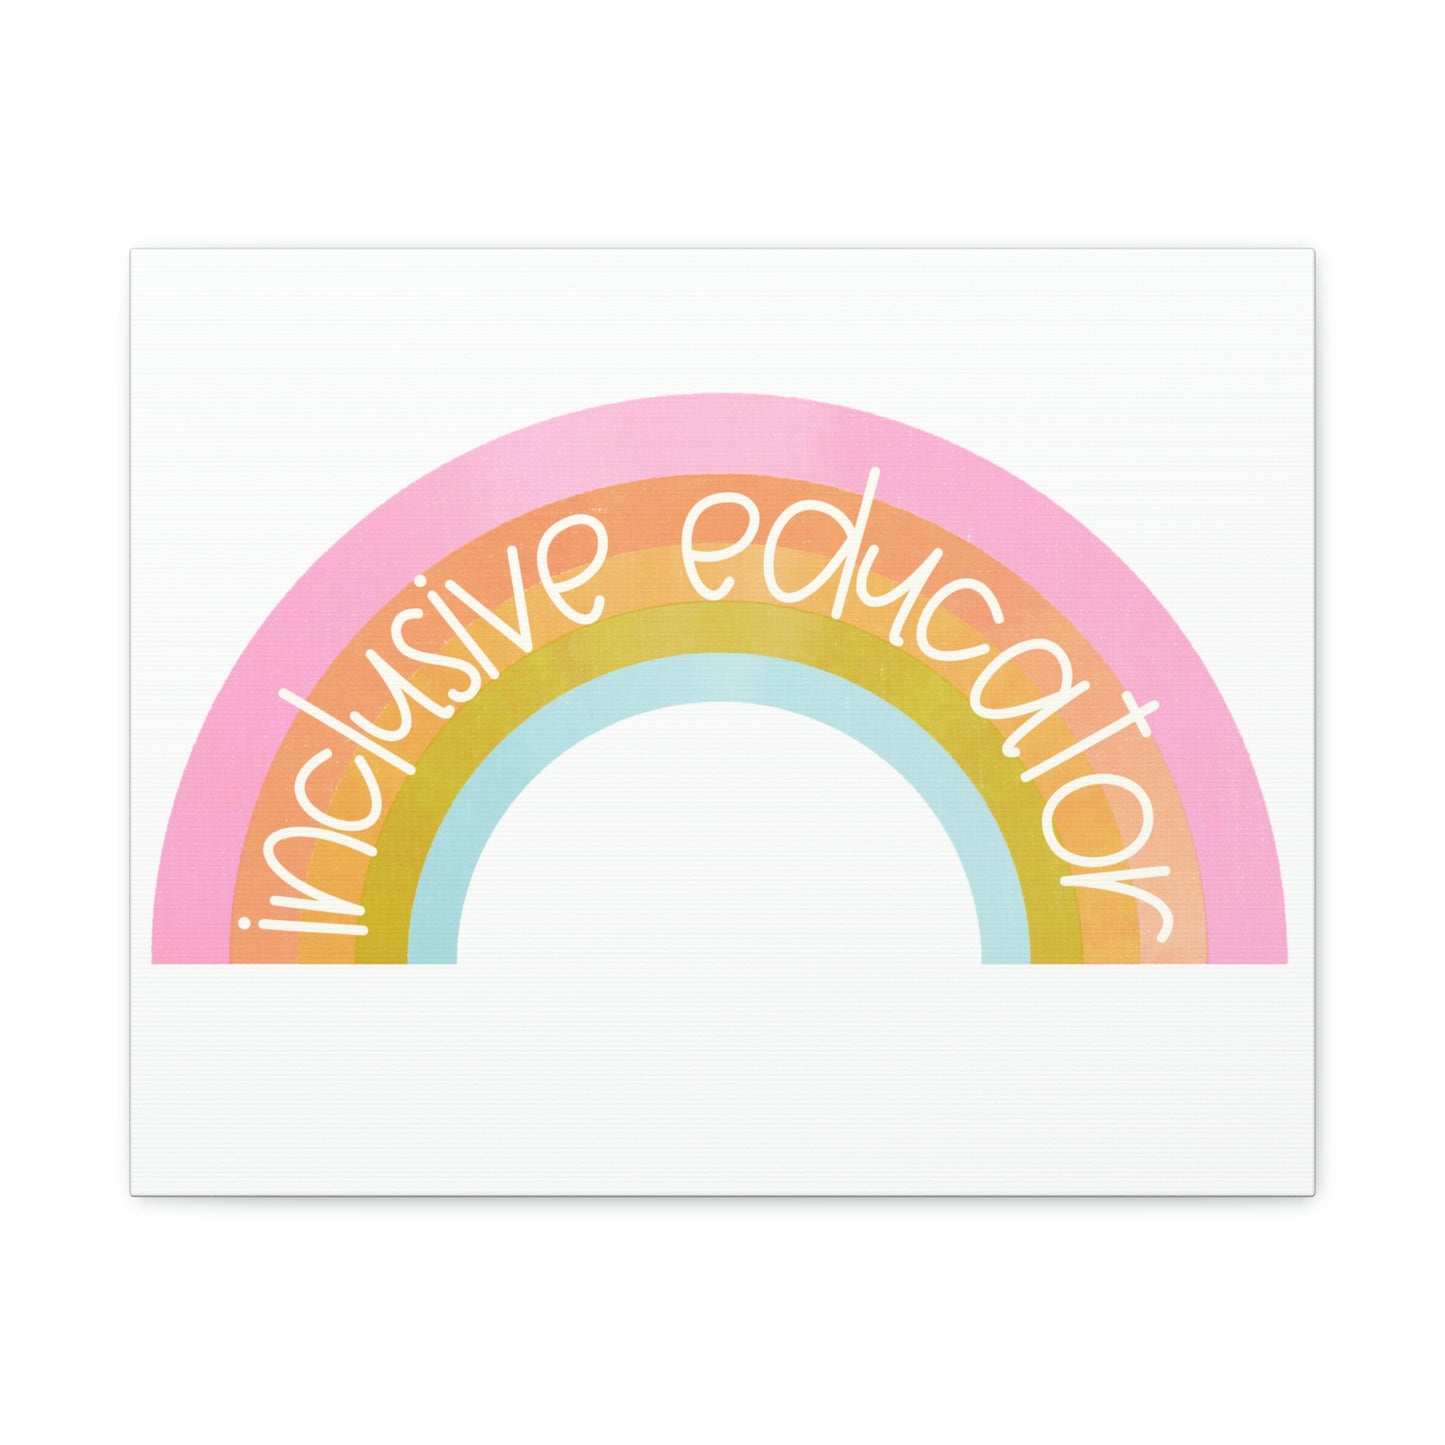 Inclusive Educator Canvas Print (20 x 16 in)